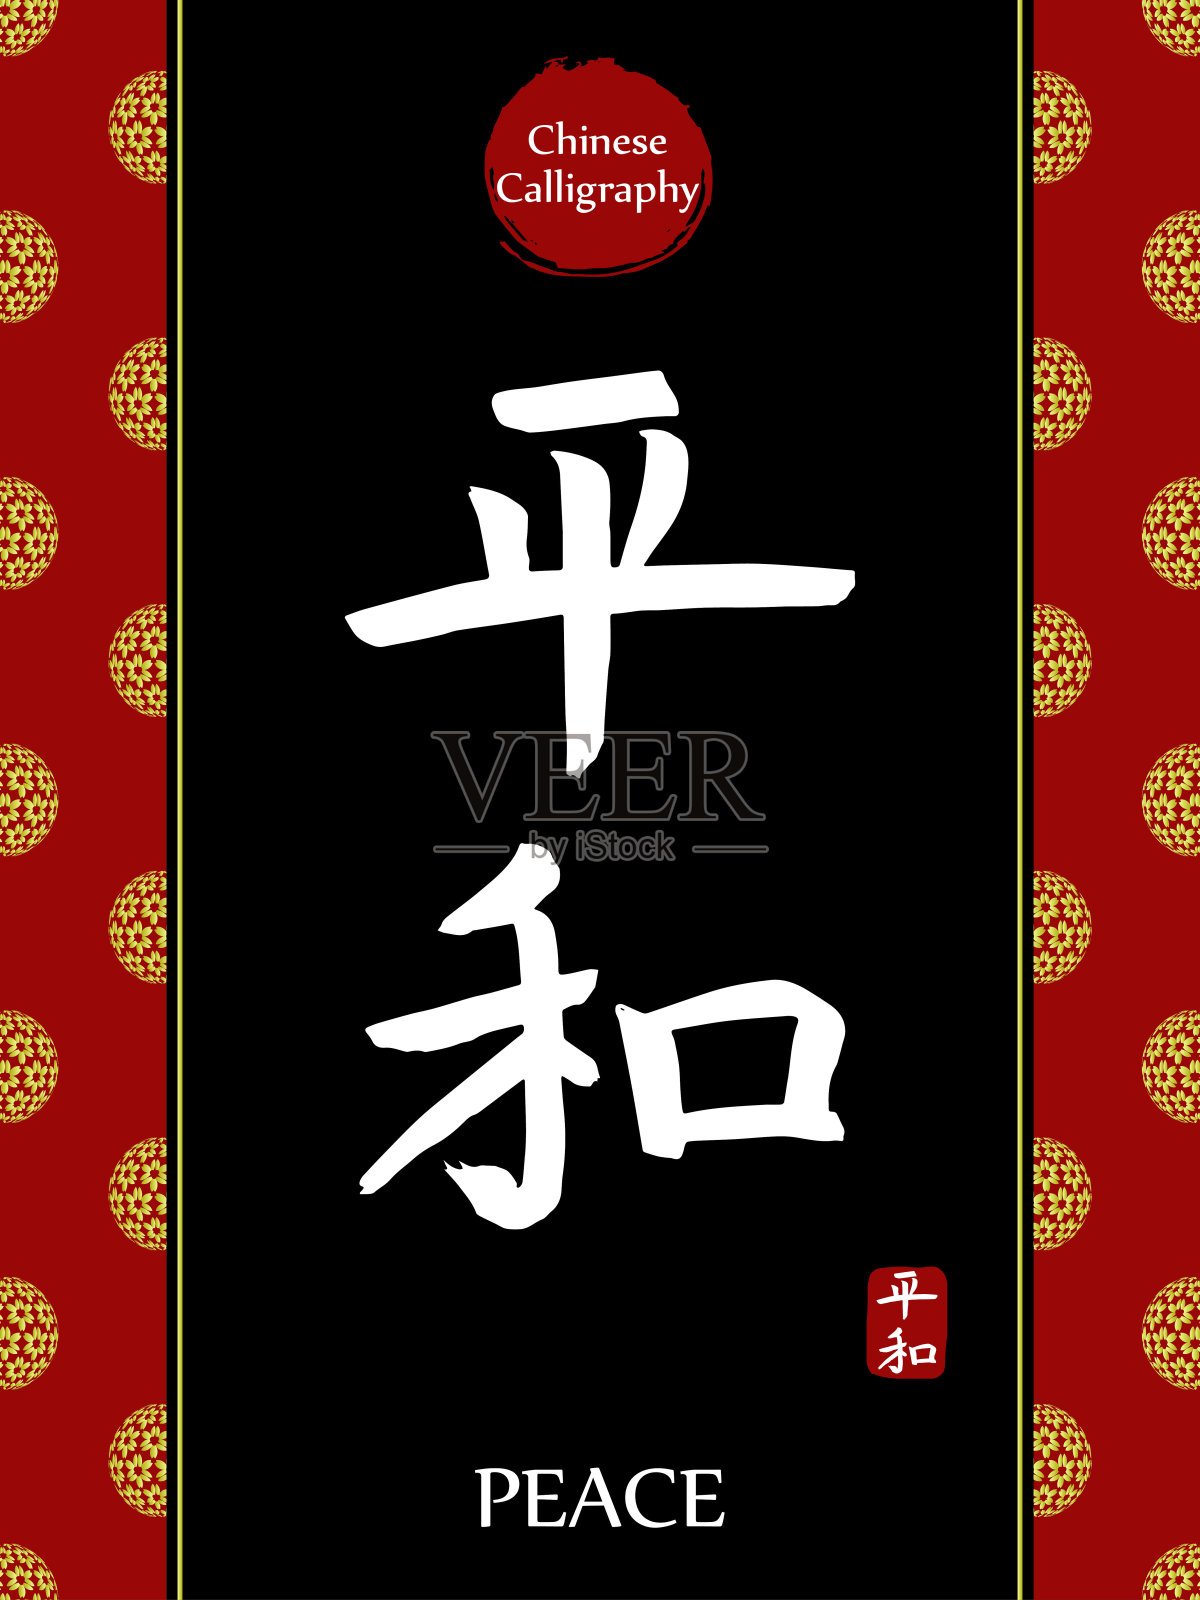 中国书法象形文字的翻译:和平。亚洲金花球农历新年图案。向量中国符号在黑色背景。手绘图画文字。毛笔书法插画图片素材